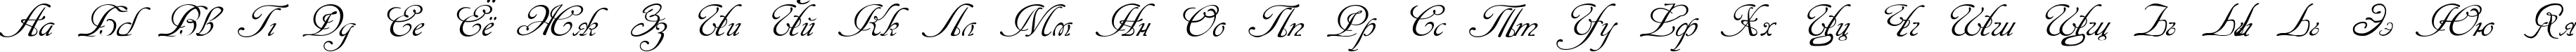 Пример написания русского алфавита шрифтом Cansellarist